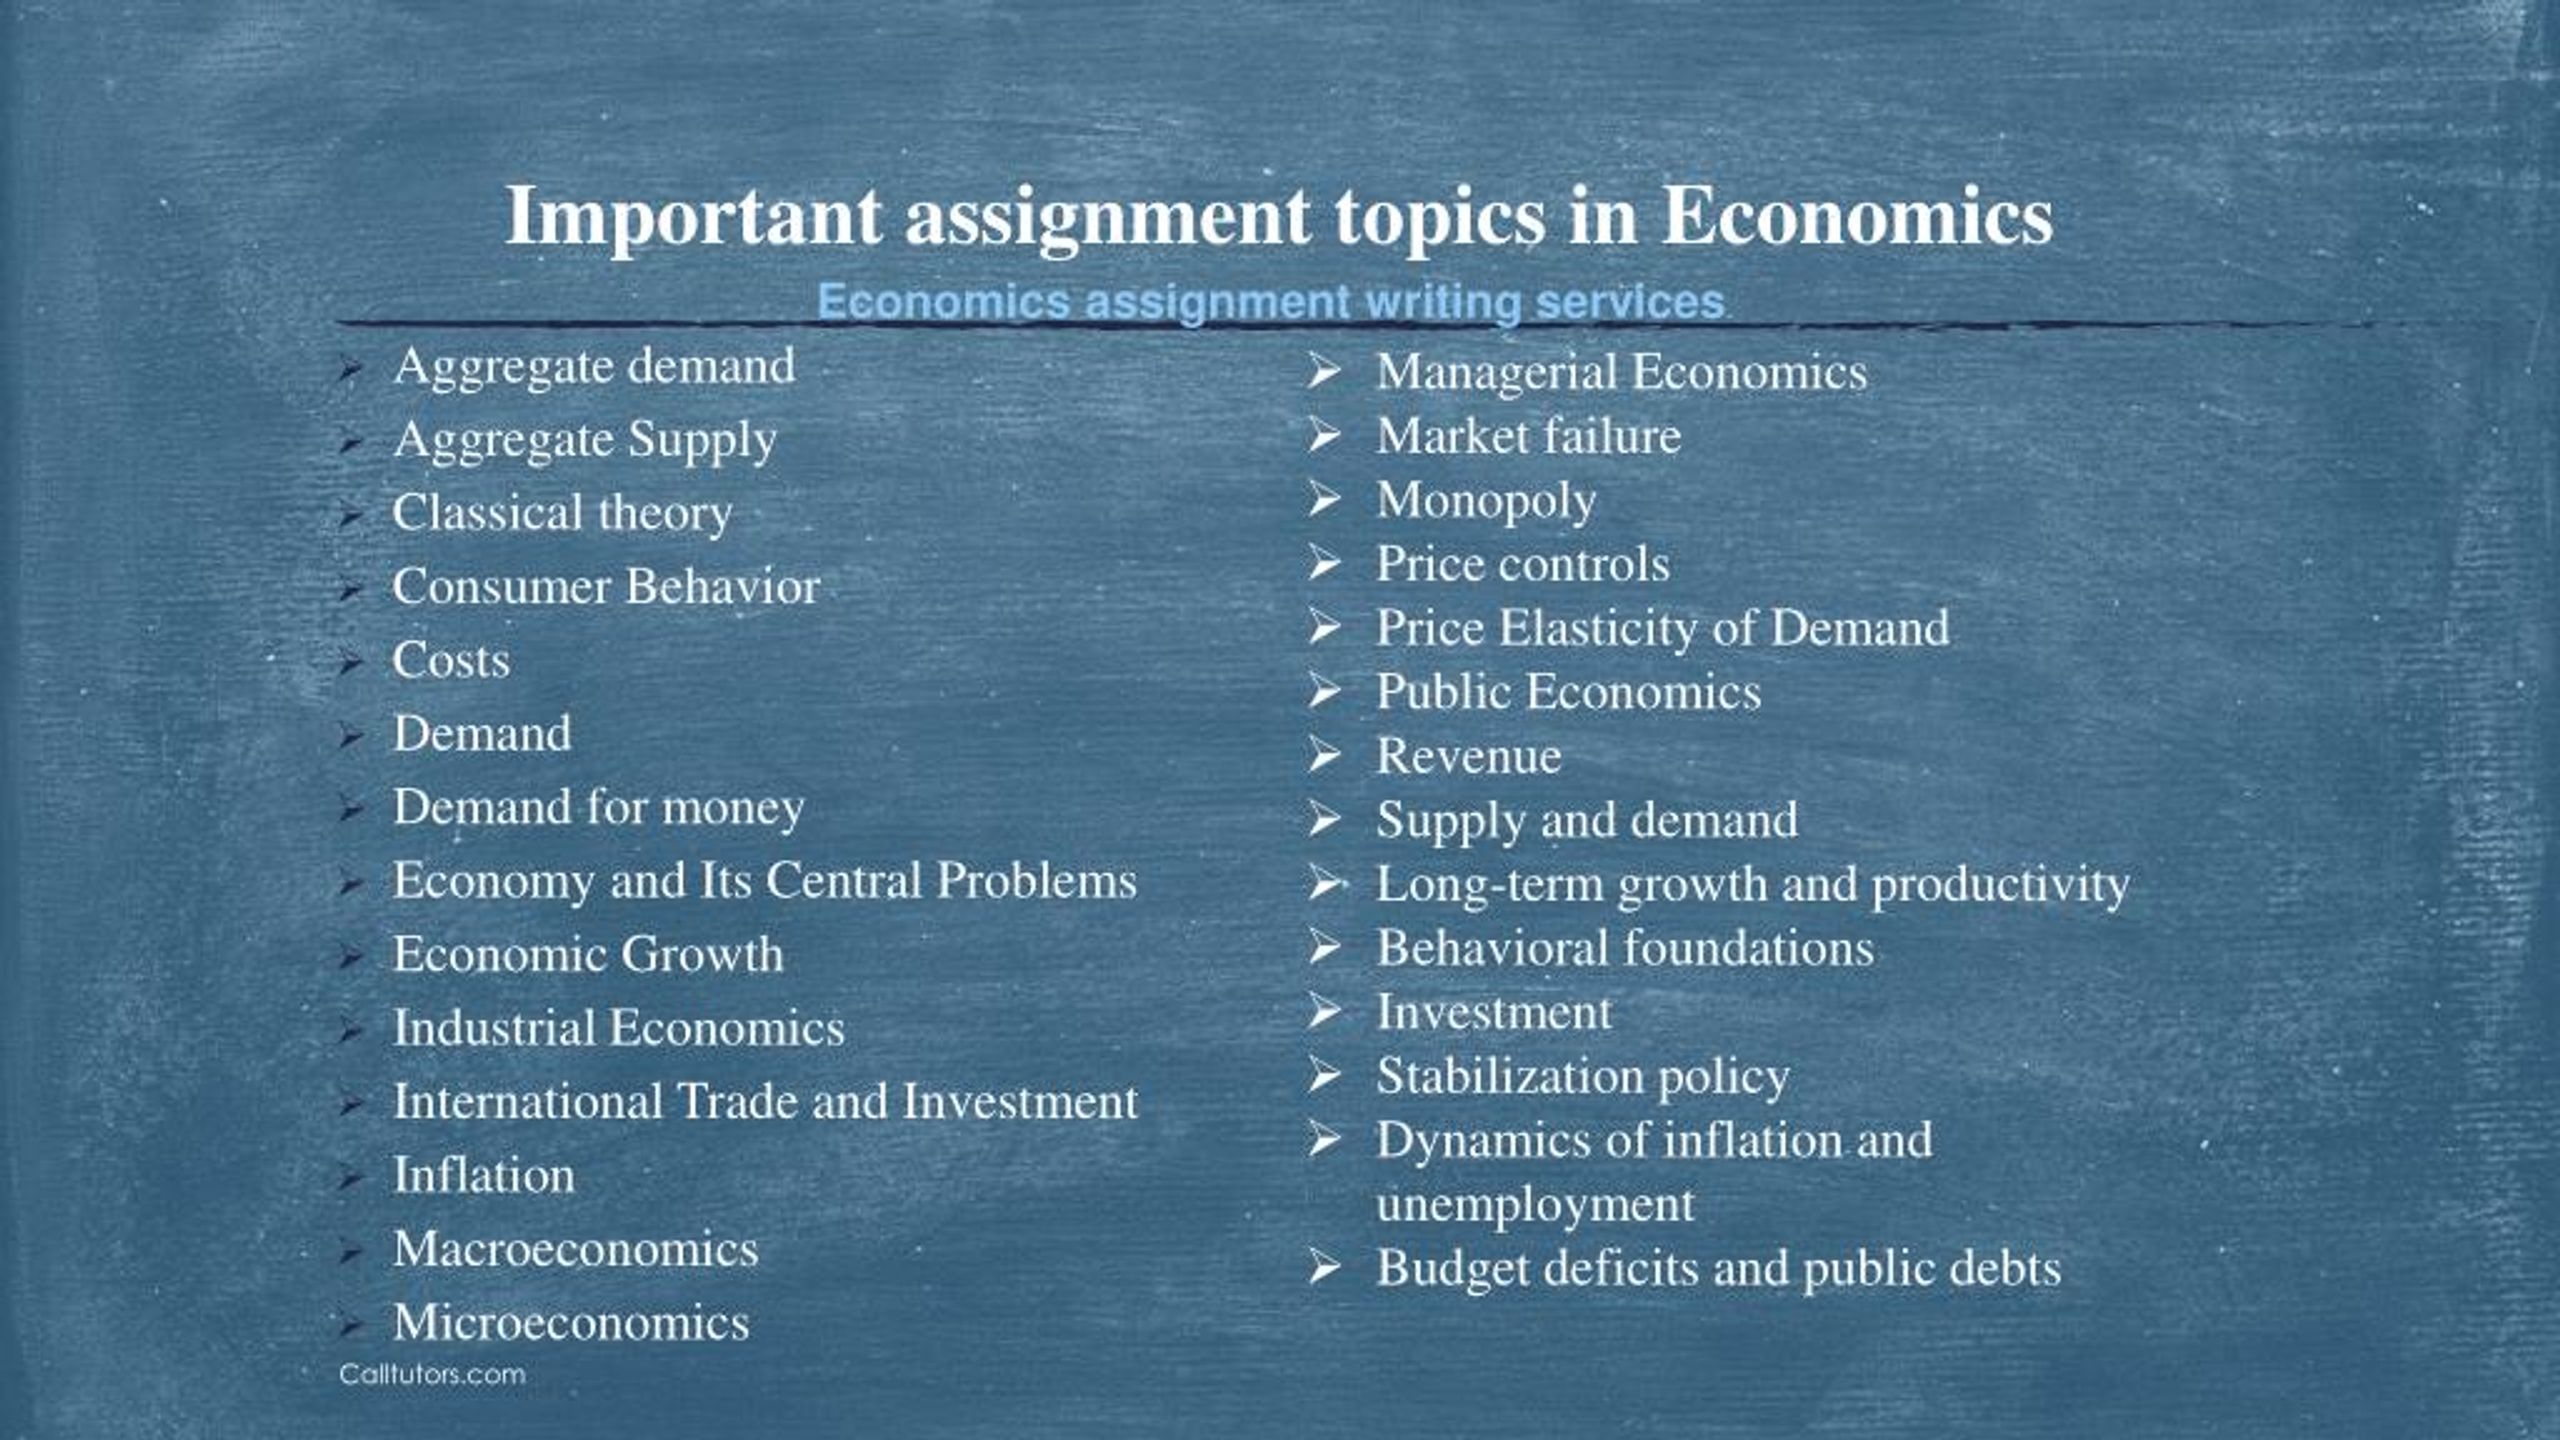 managerial economics assignment topics